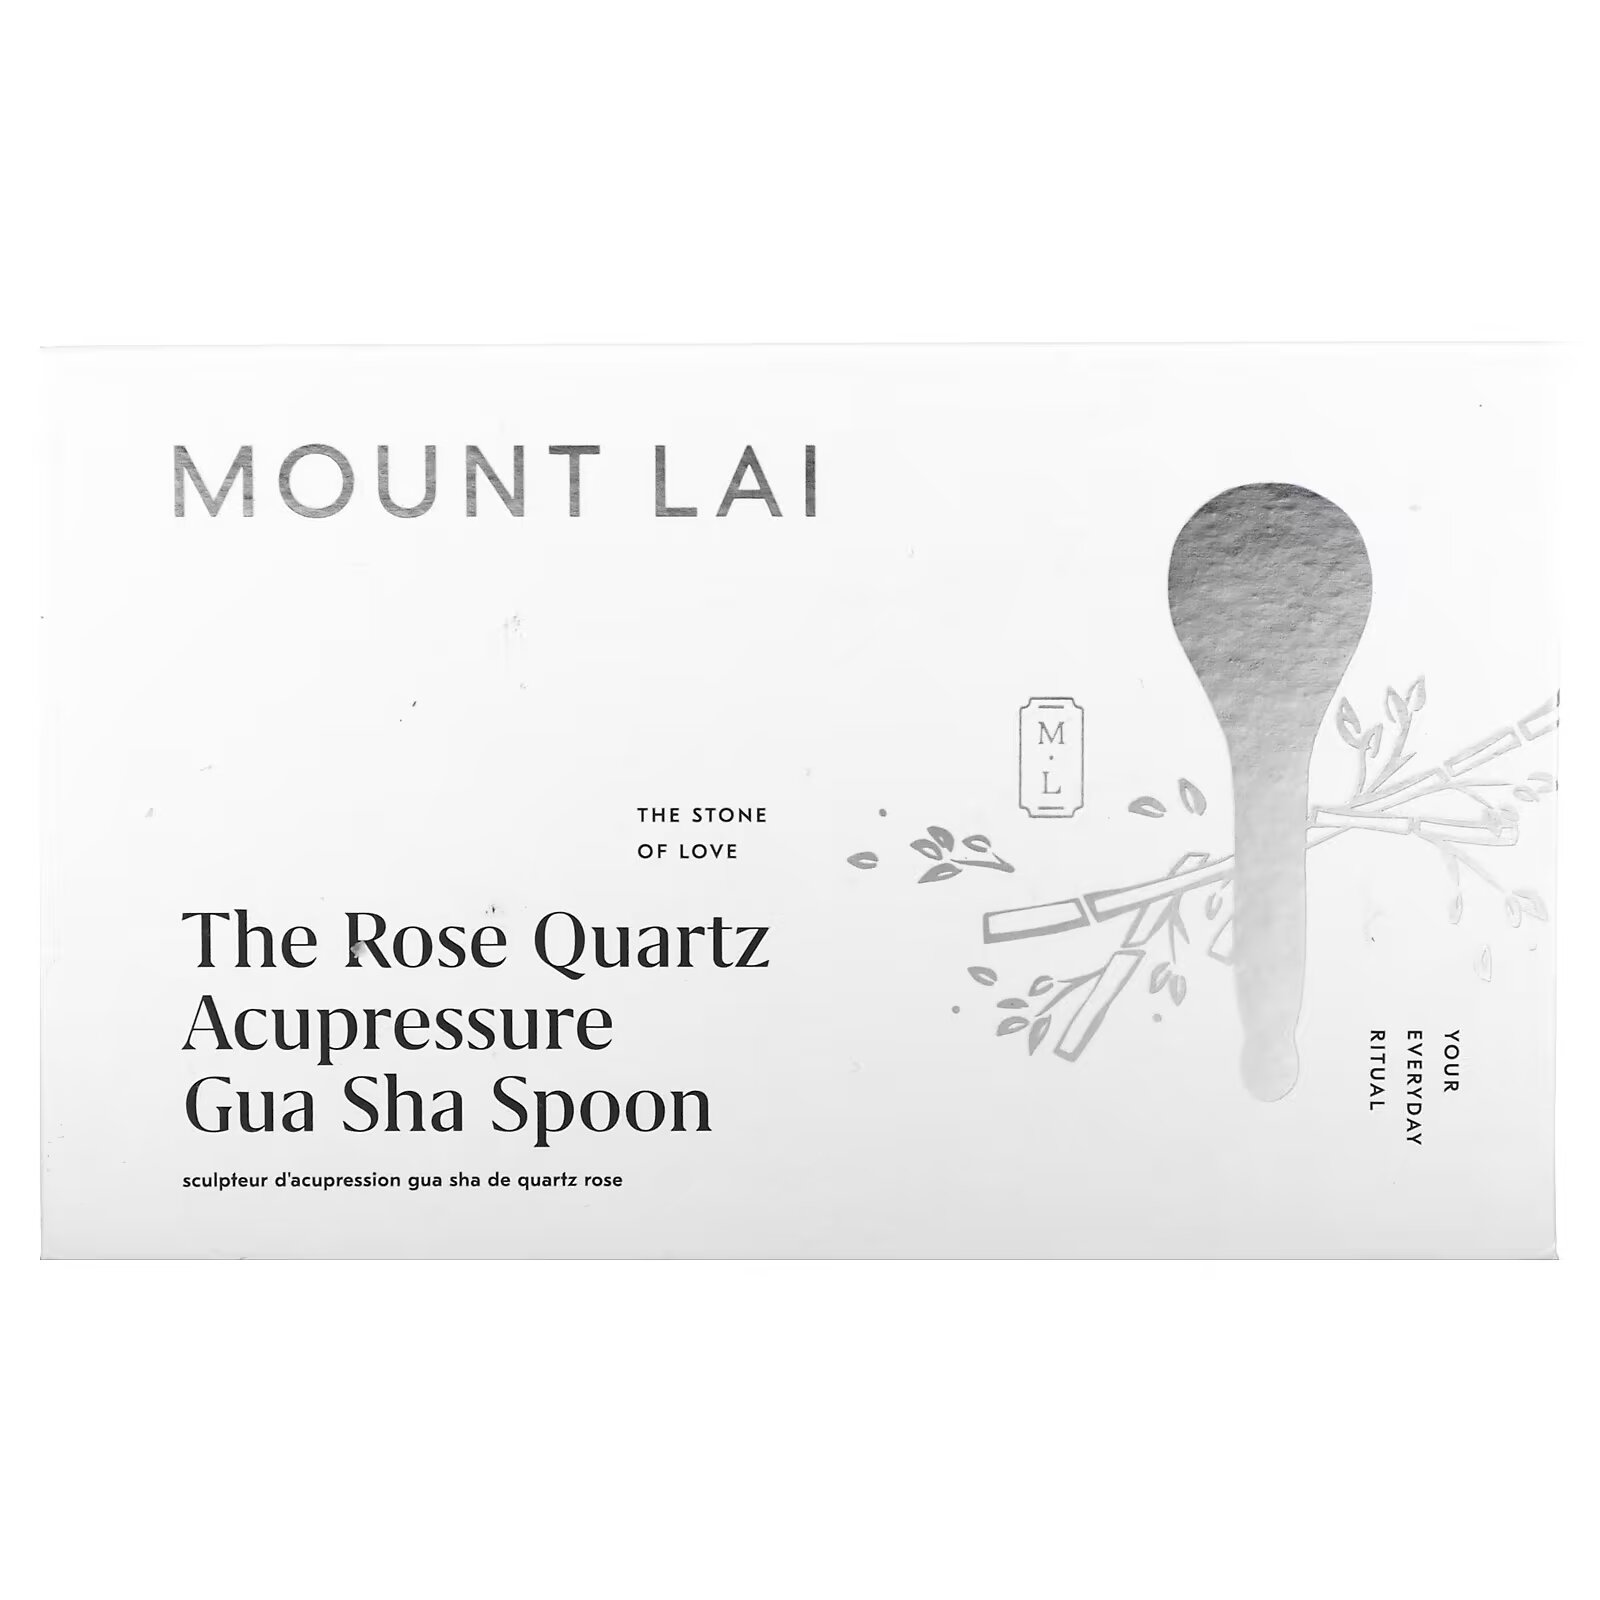 Mount Lai, Ложка для акупрессуры с розовым кварцем, гуа-ша, 1 шт. mount lai спа набор для лица с розовым кварцем набор из 2 предметов